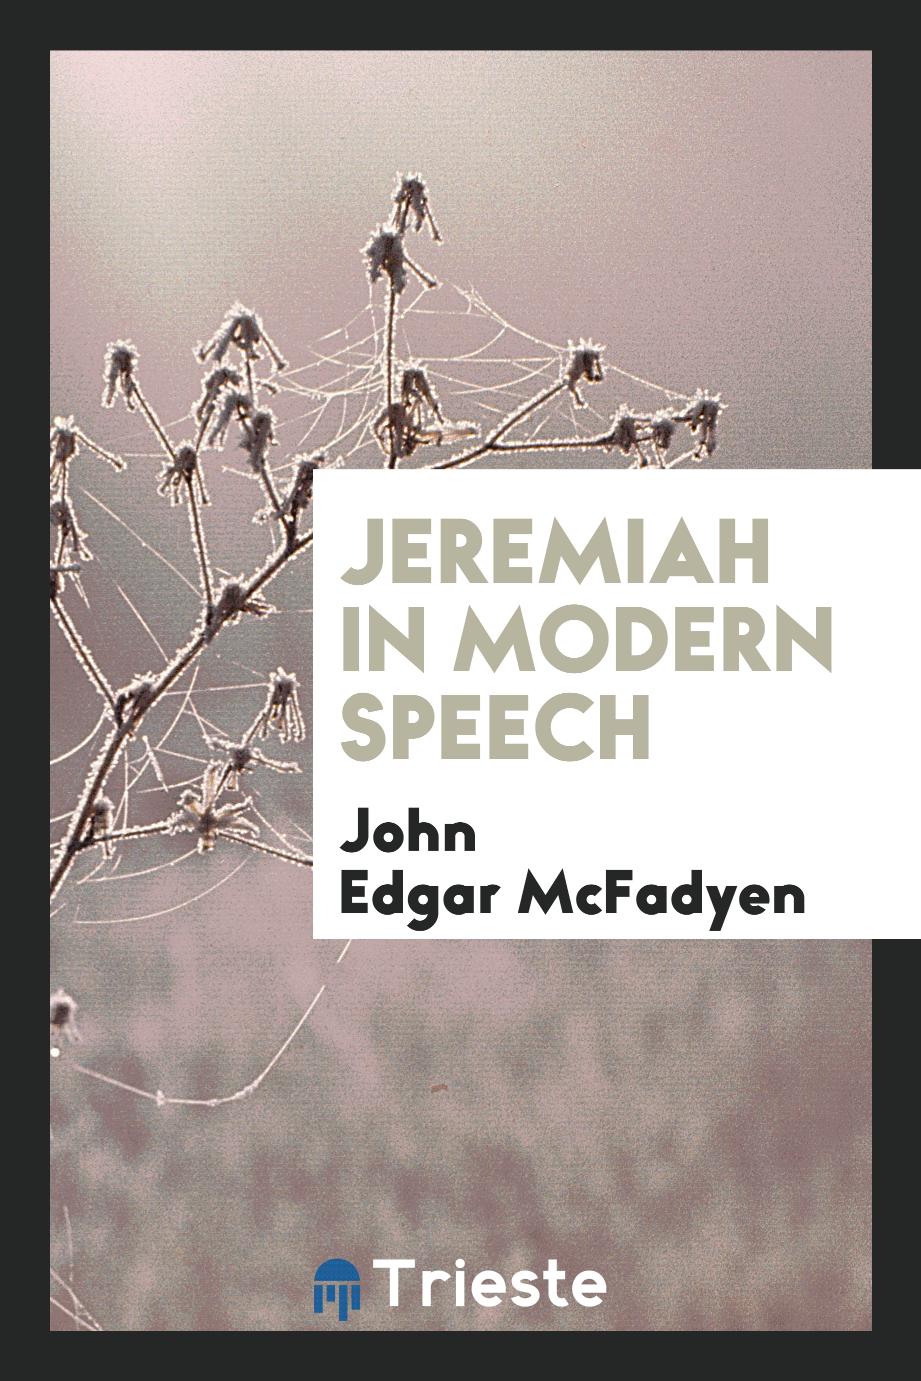 Jeremiah in modern speech